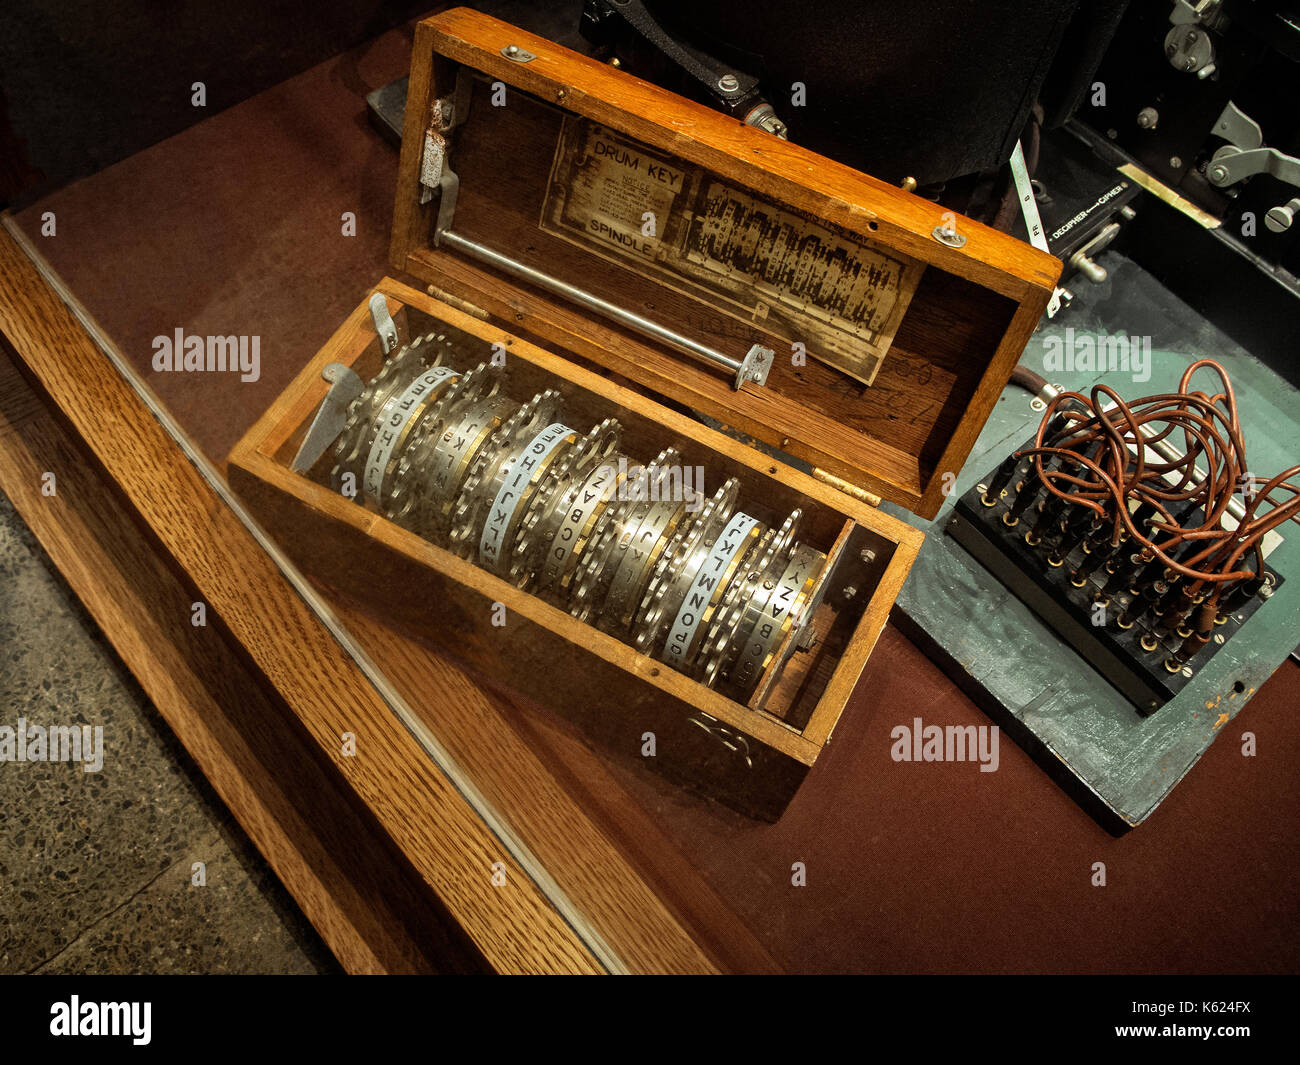 Drum Keys for WWII Enigma decoding machine. Stock Photo